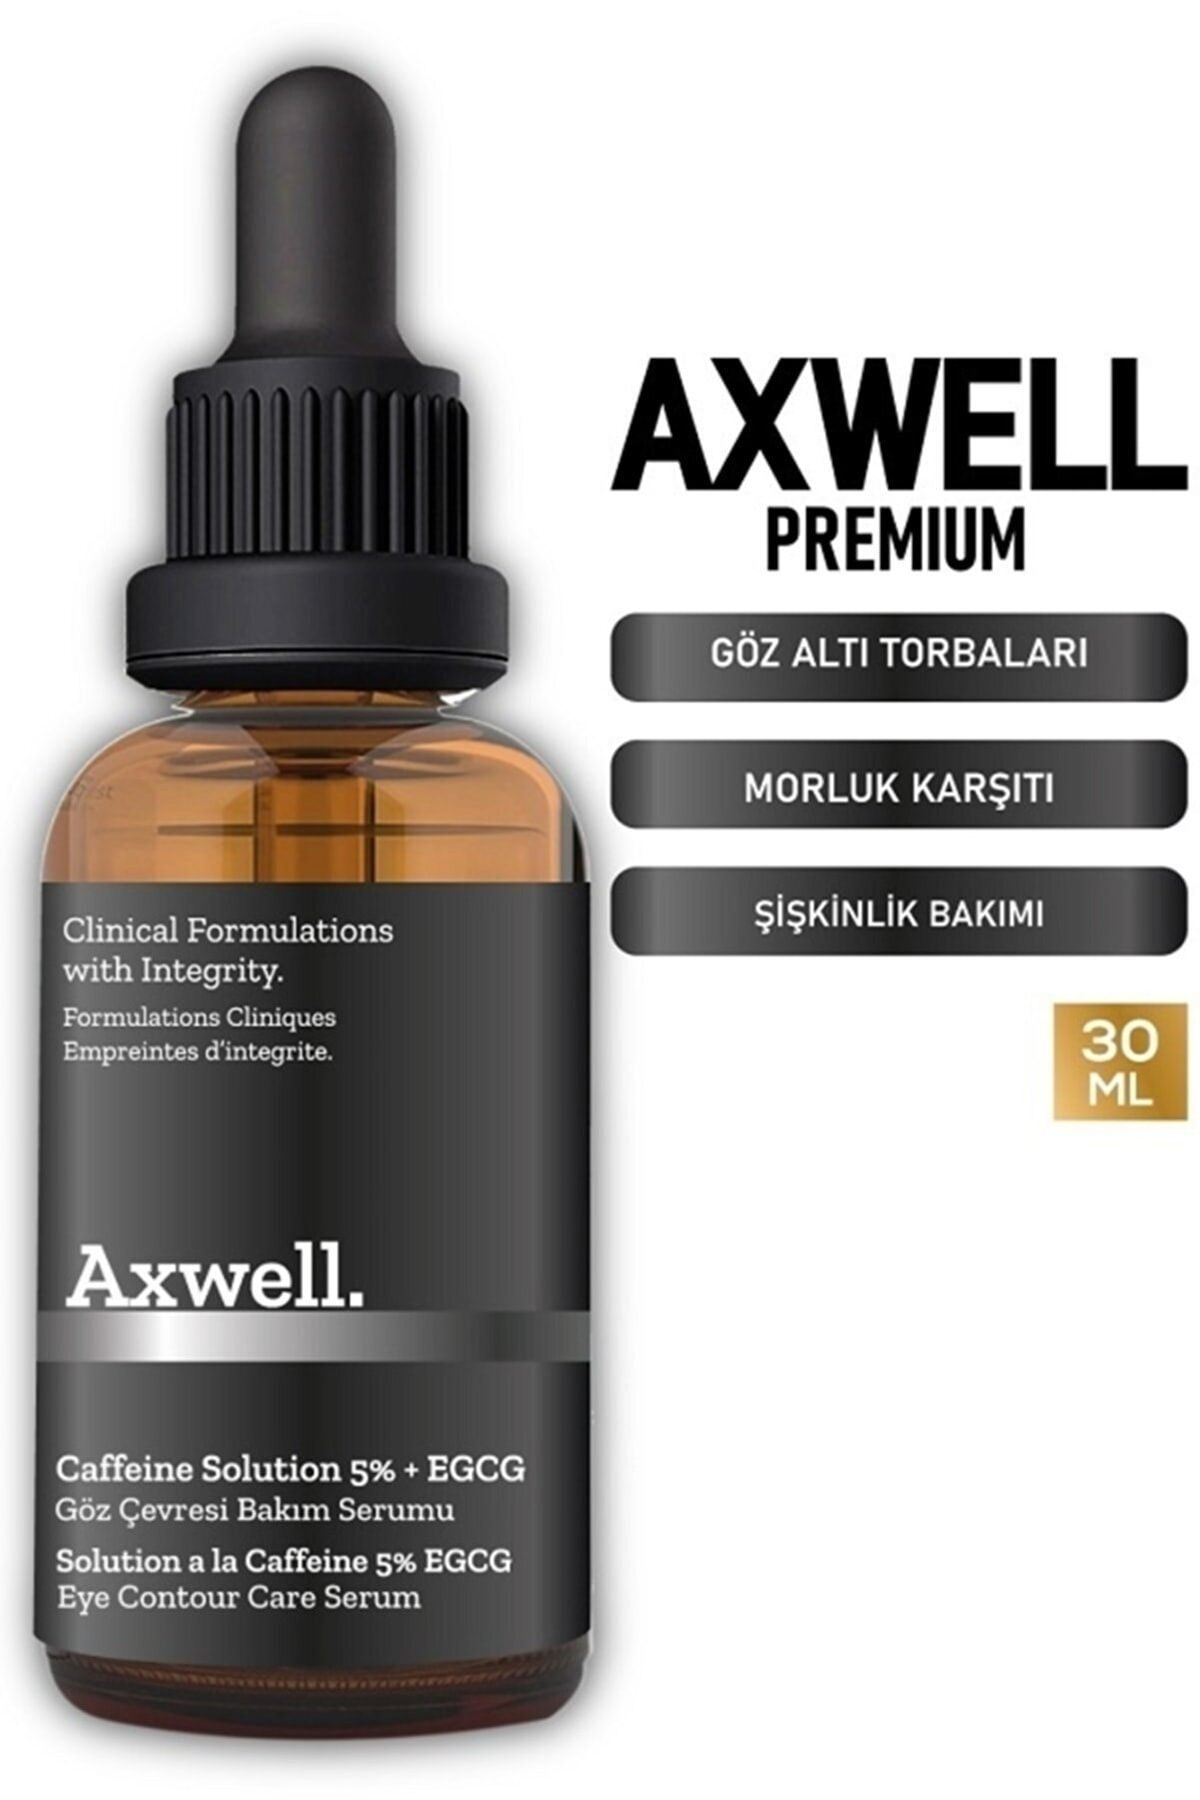 AXWELL (caffeine Solutions 5% Vitamin C) Göz Altı Torbalanma Ve Morluk Karşıtı Bakım Serumu 30 Ml